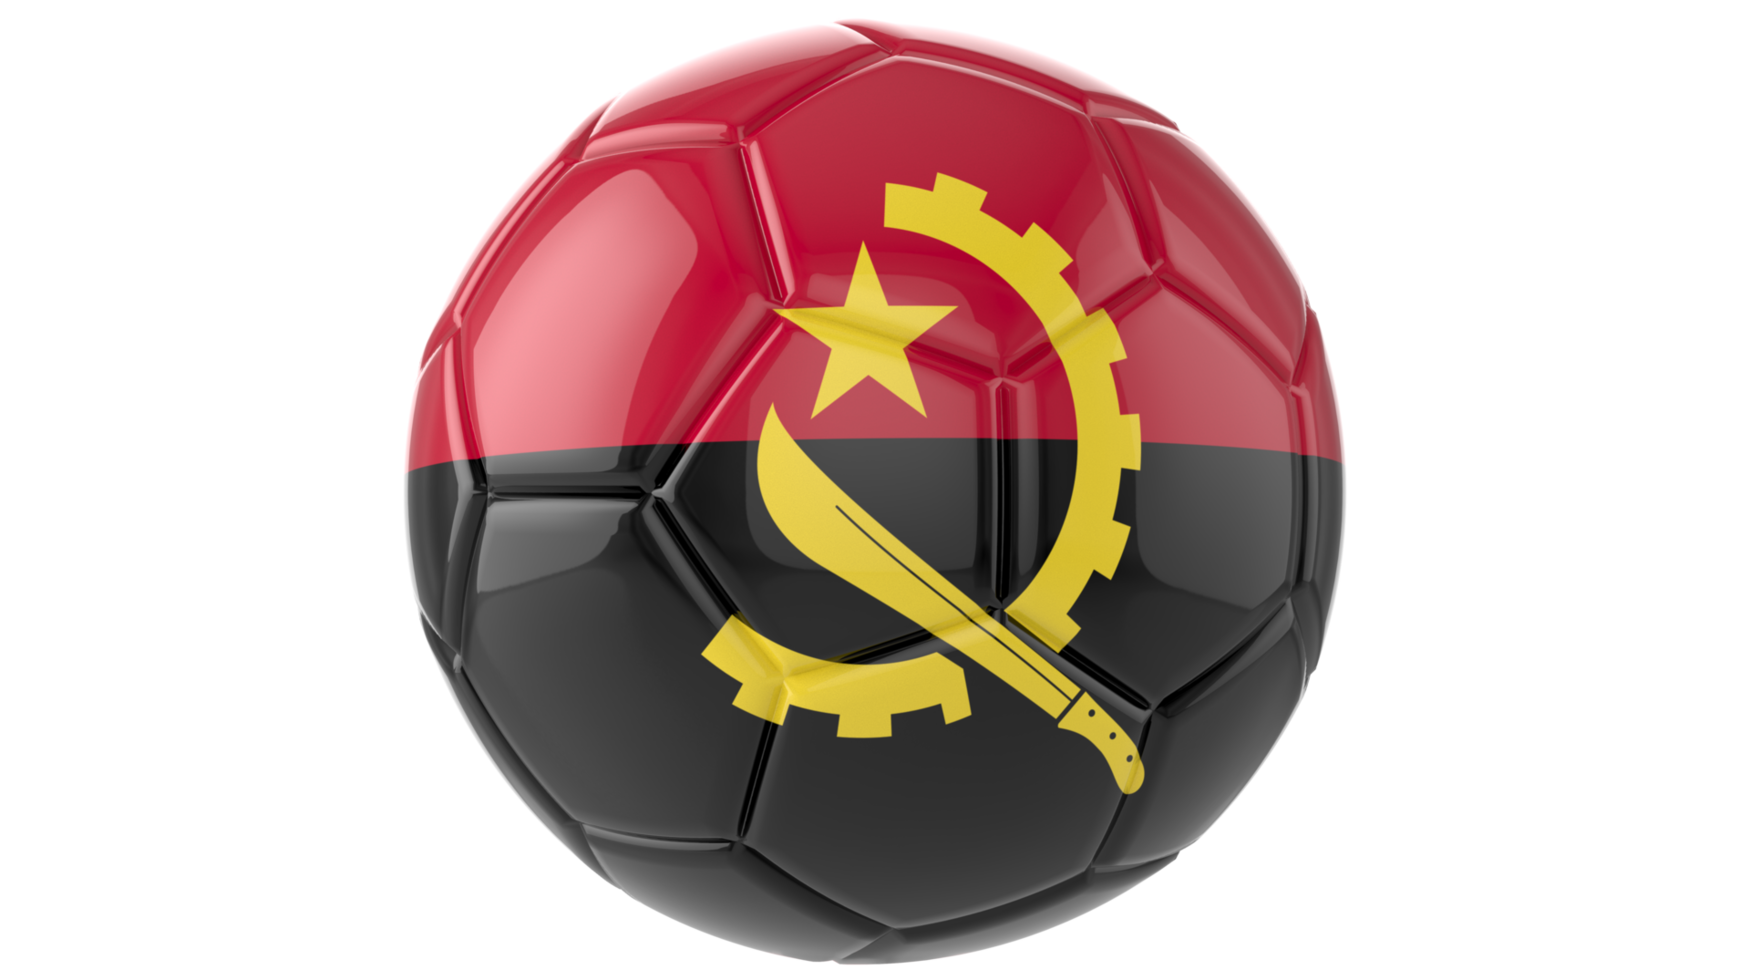 Ballon de football réaliste 3d avec le drapeau de l'angola dessus isolé sur fond png transparent